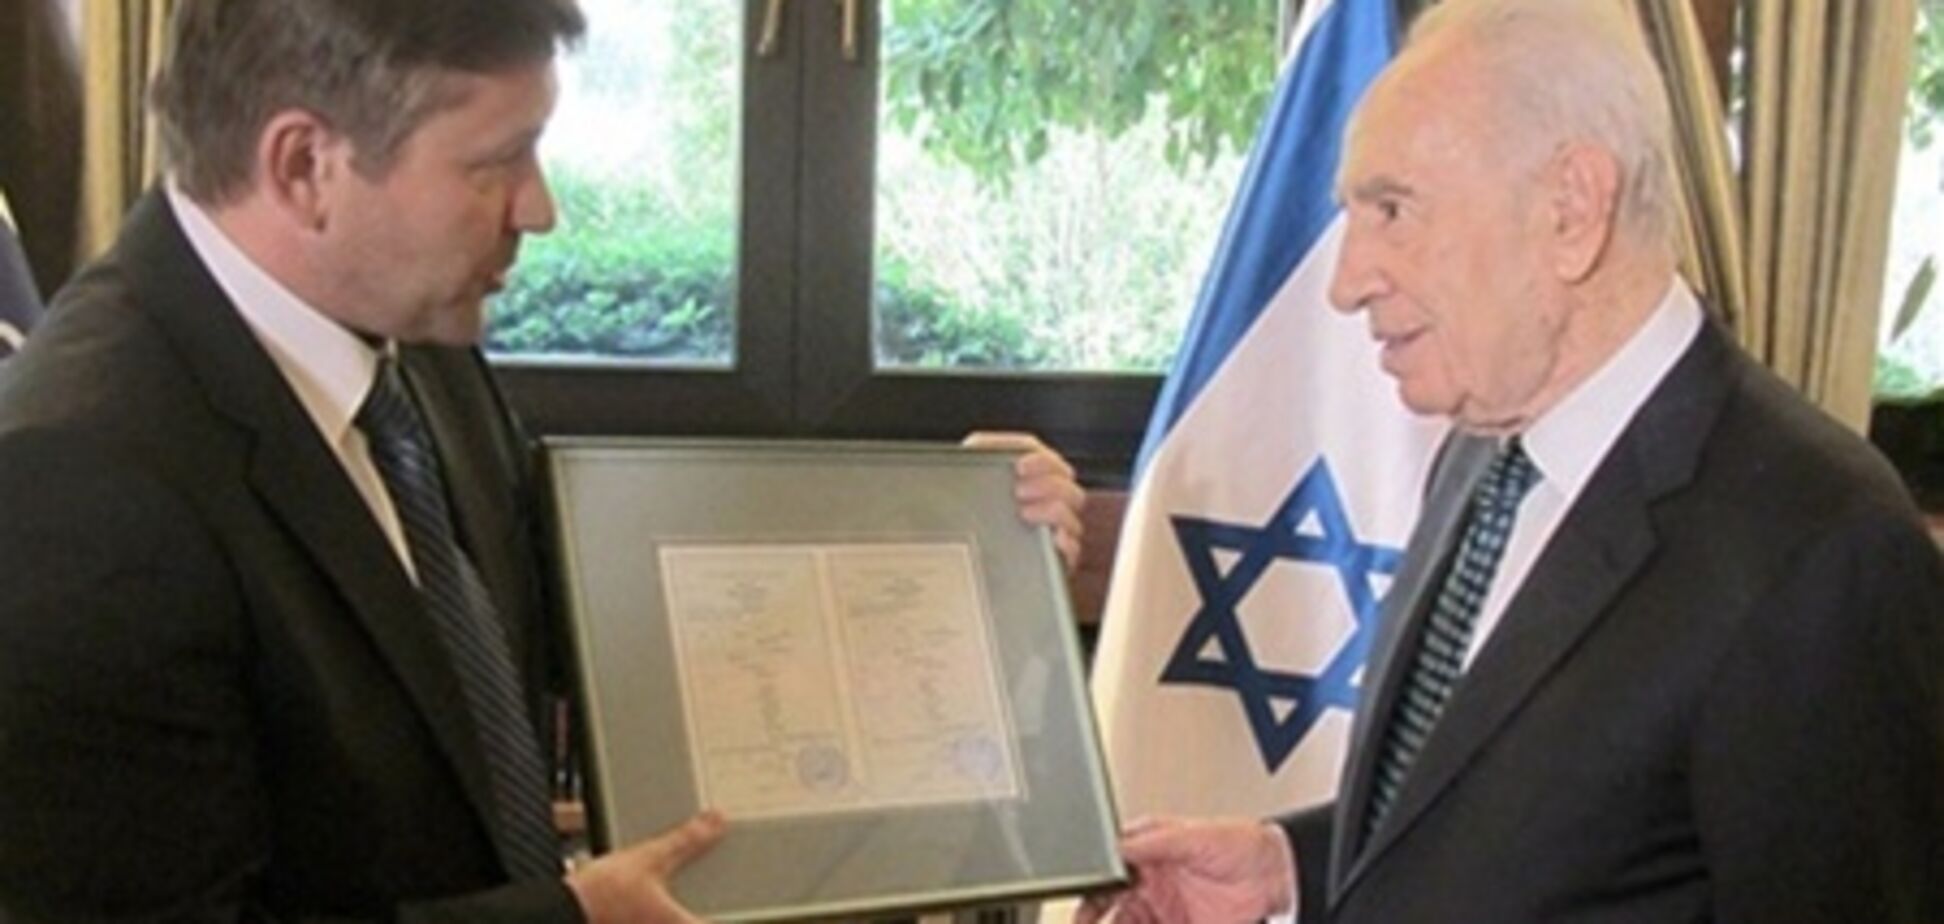 Президент Израиля получил свидетельство о рождении в Беларуси